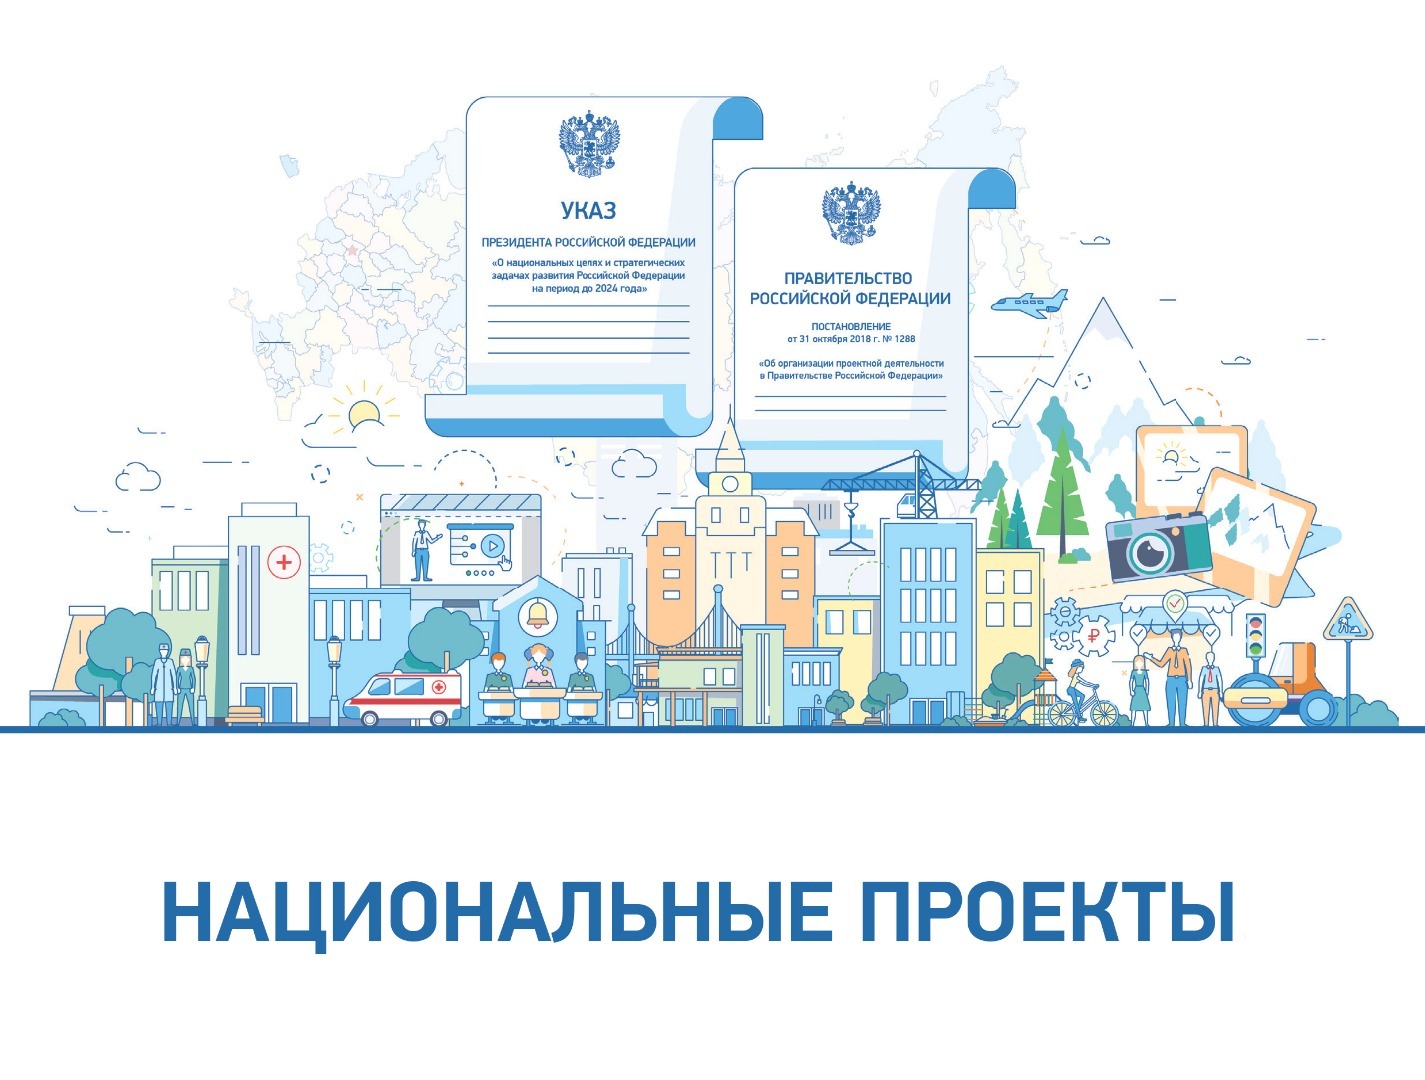 Нацпроект "Образование": В Башкортостане состоялся демонстрационный экзамен по компетенции «Ветеринария»